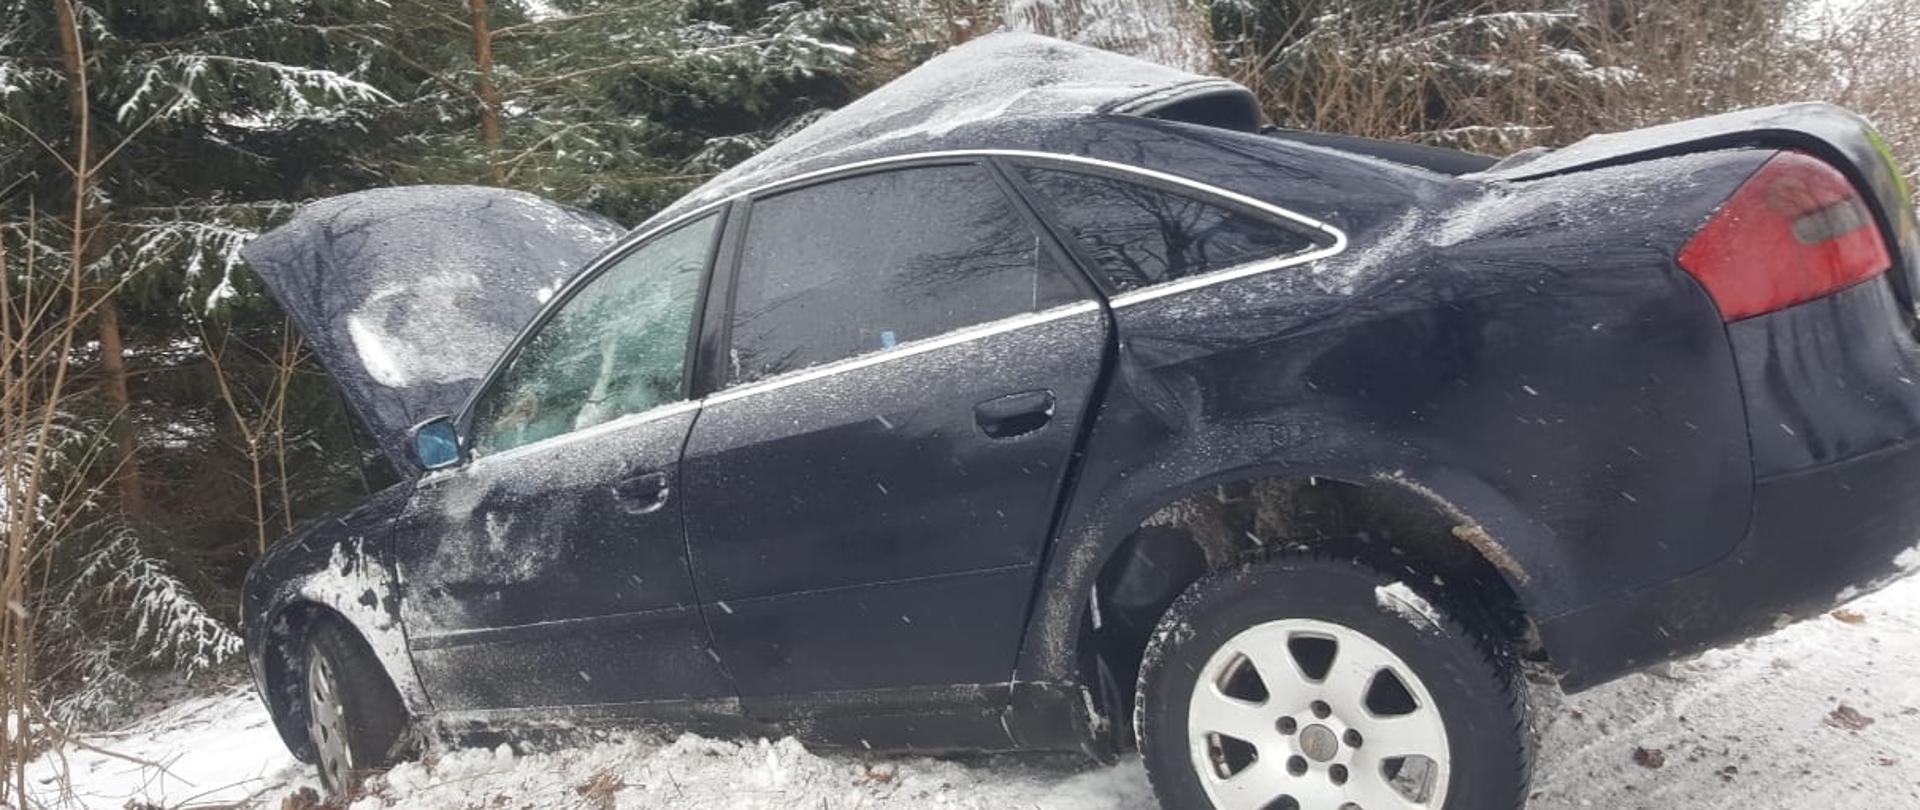 Ciemny samochód osoby uderzył lewym bokiem w drzewo i jest cały zniszczony. Dokoła leży śnieg. 